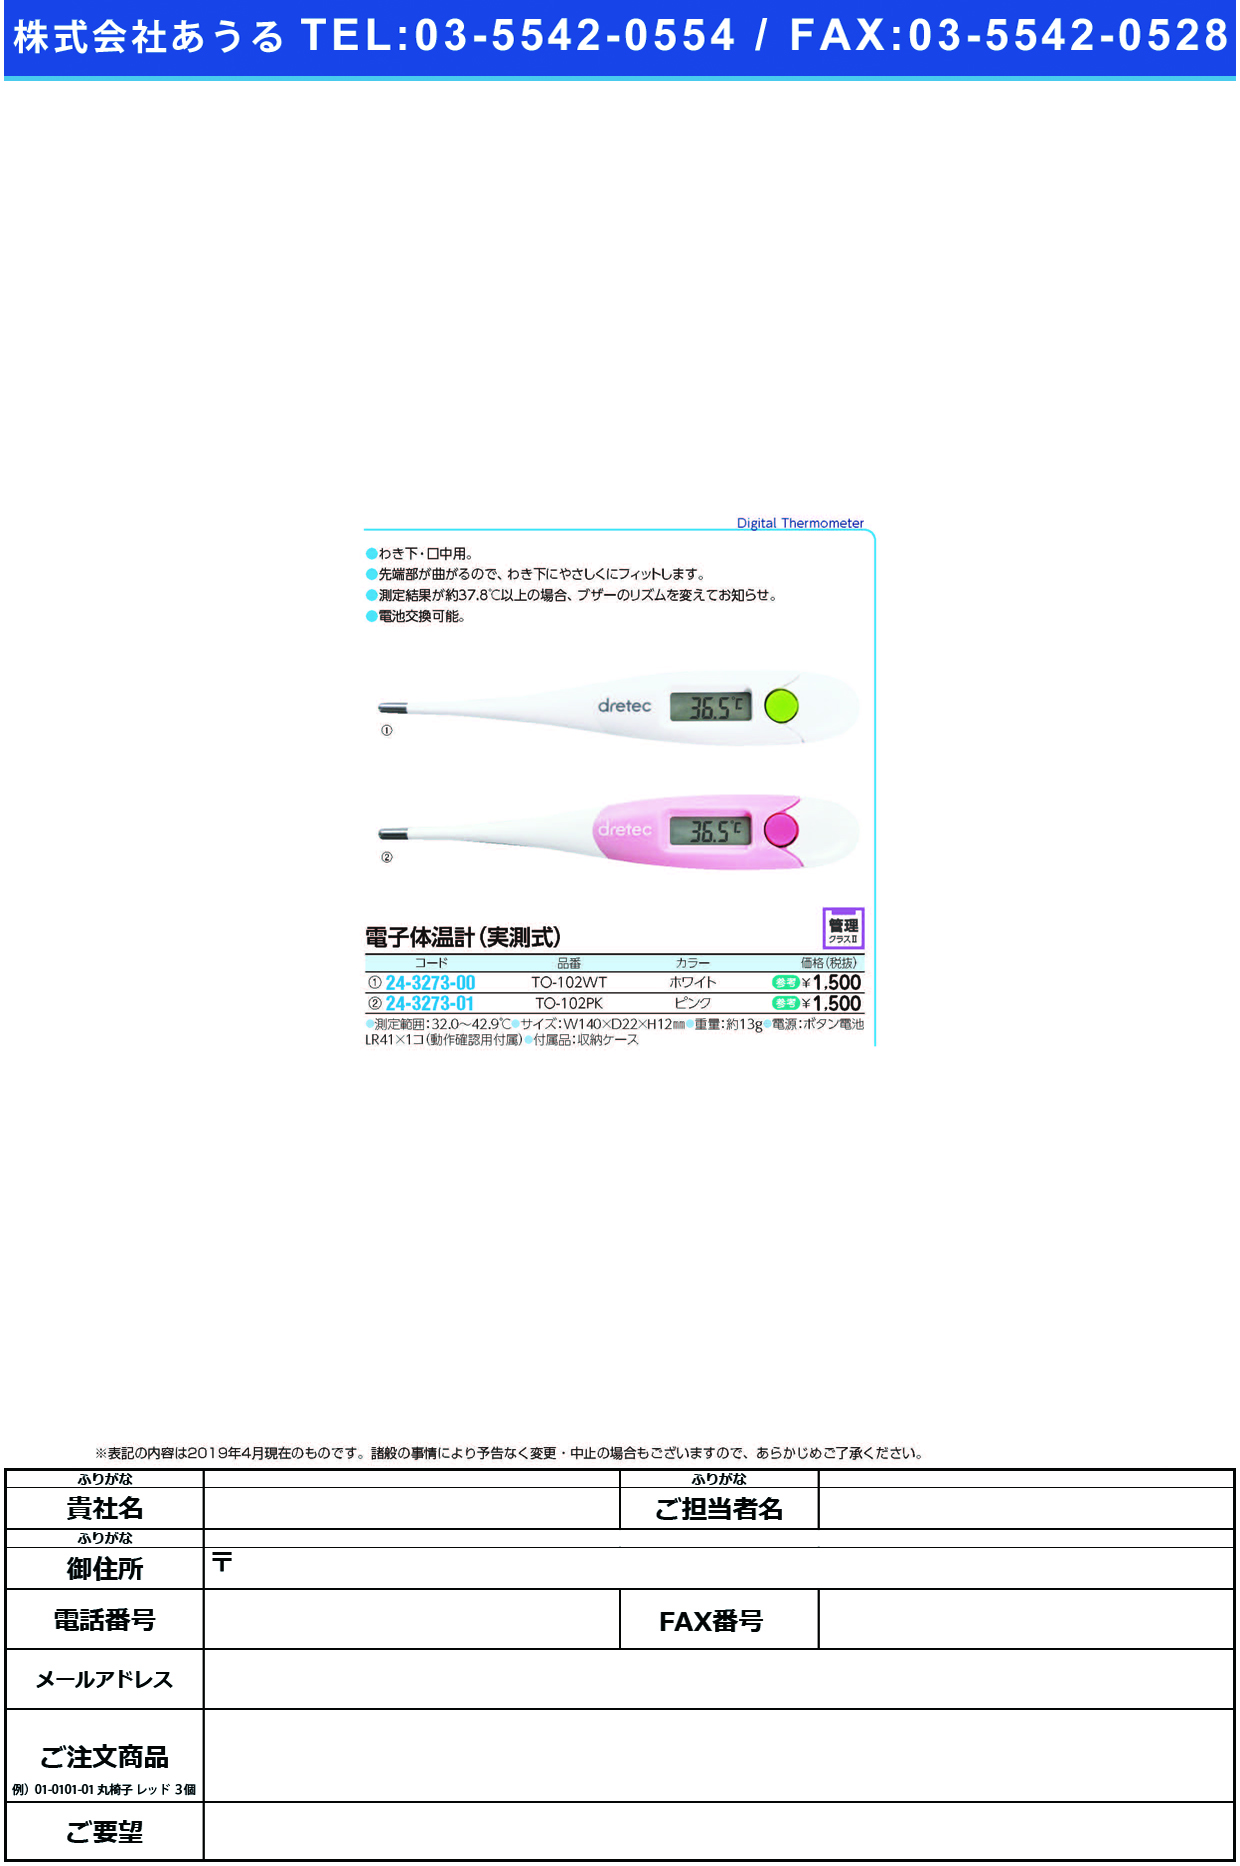 (24-3273-00)電子体温計 TO-102WT(ﾎﾜｲﾄ) ﾃﾞﾝｼﾀｲｵﾝｹｲ(ドリテック)【1台単位】【2019年カタログ商品】